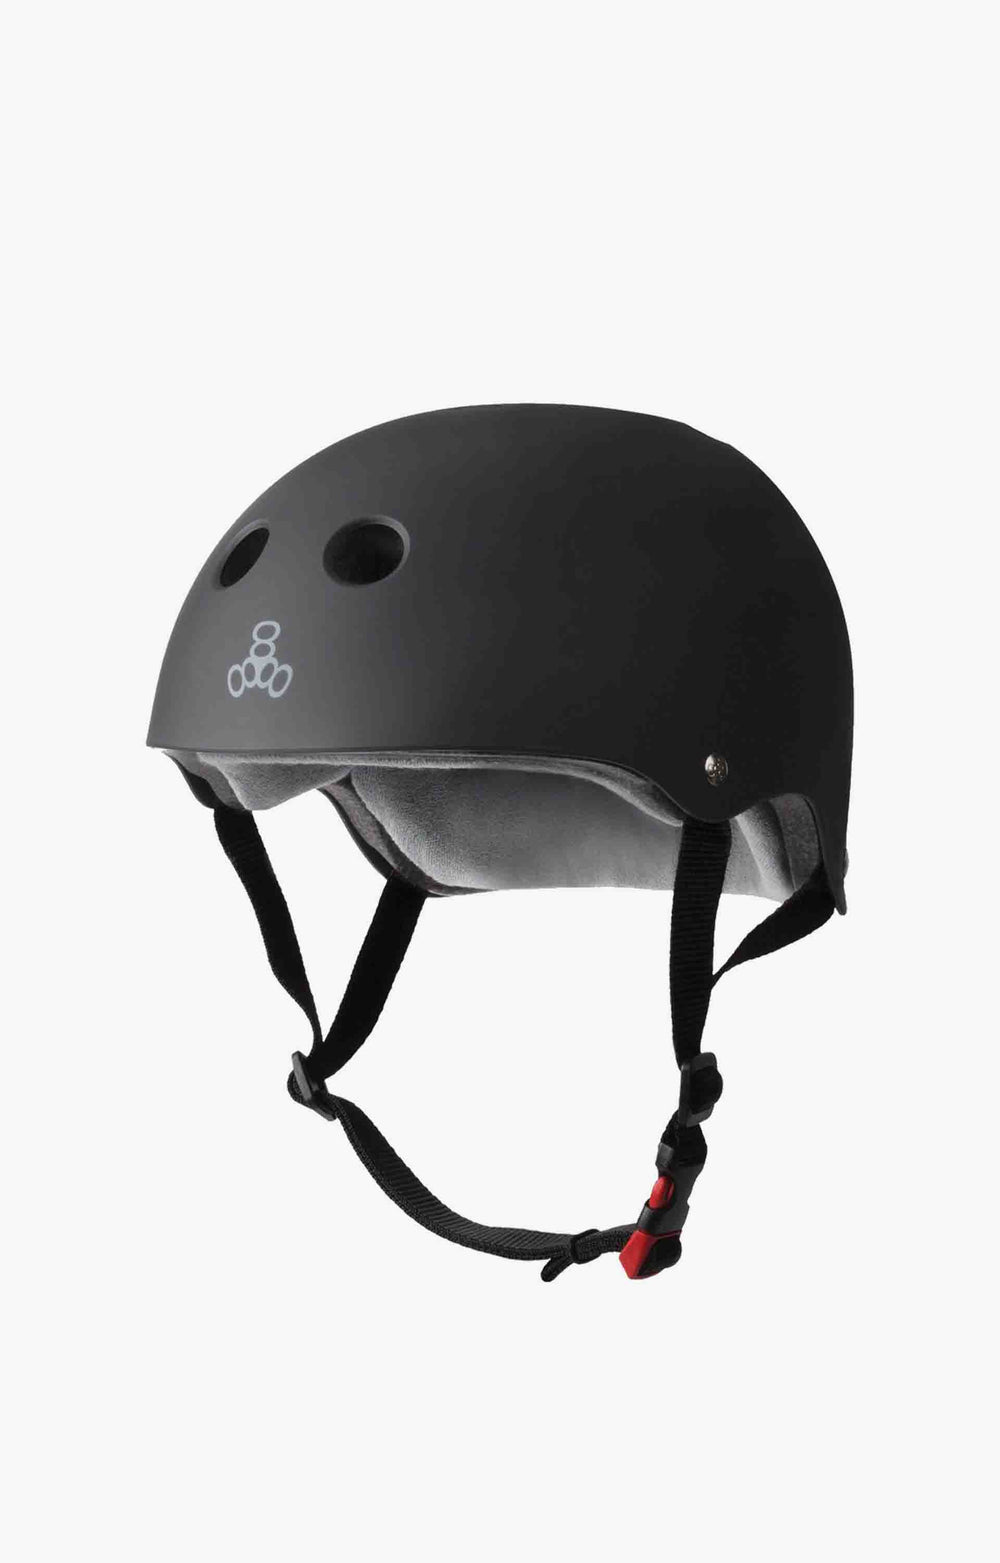 Triple 8 Certified Sweatsaver Helmet, Black Rubber